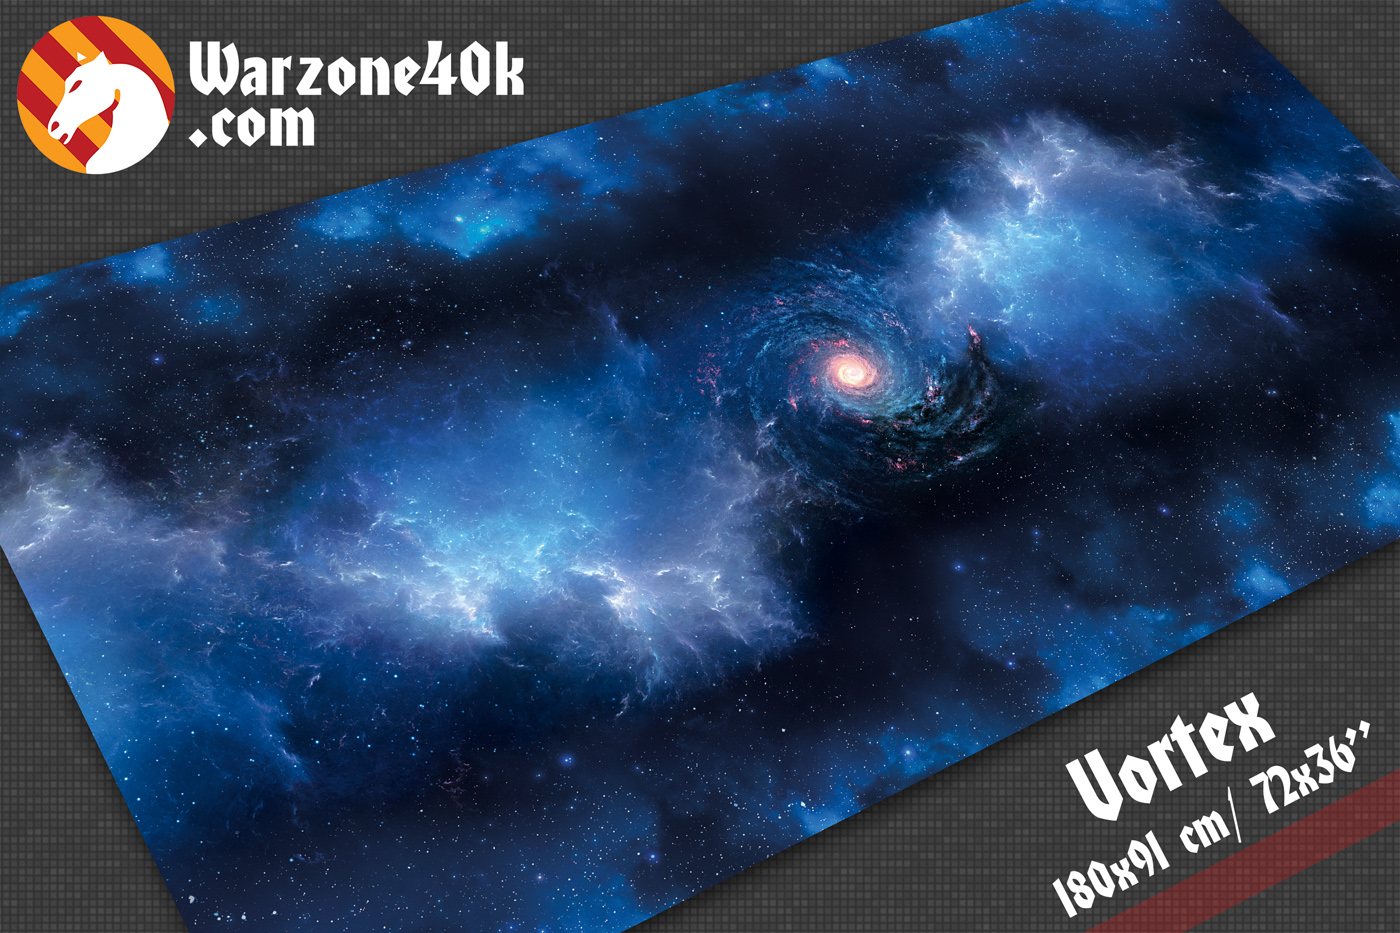 Star Wars game mat “Vortex” from Warzone40k.com